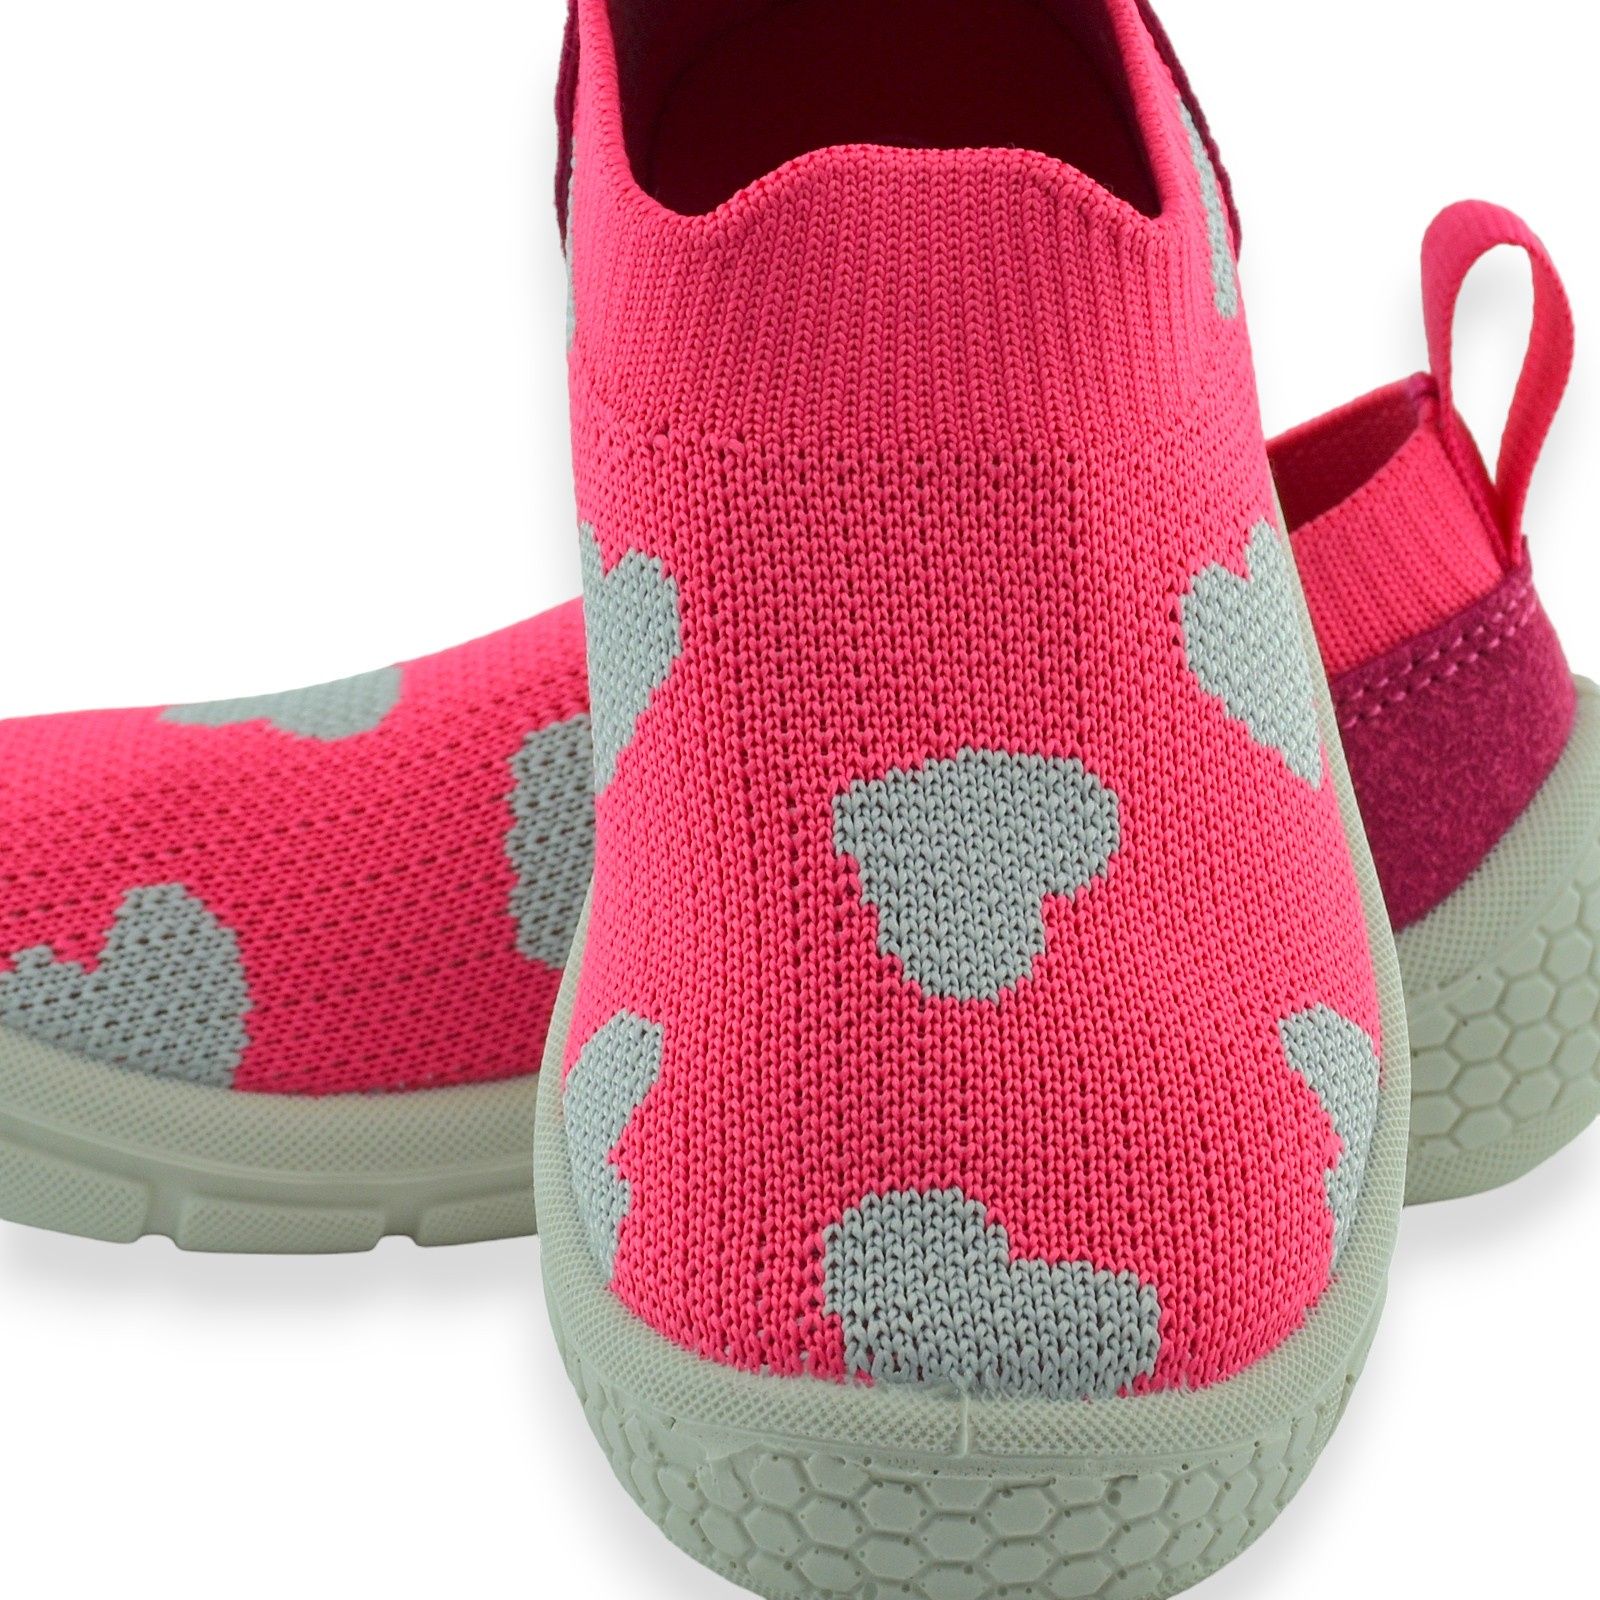 Dziewczęce wsuwane buty sportowe różowe Befado 102X019 Honey  |r.24-30